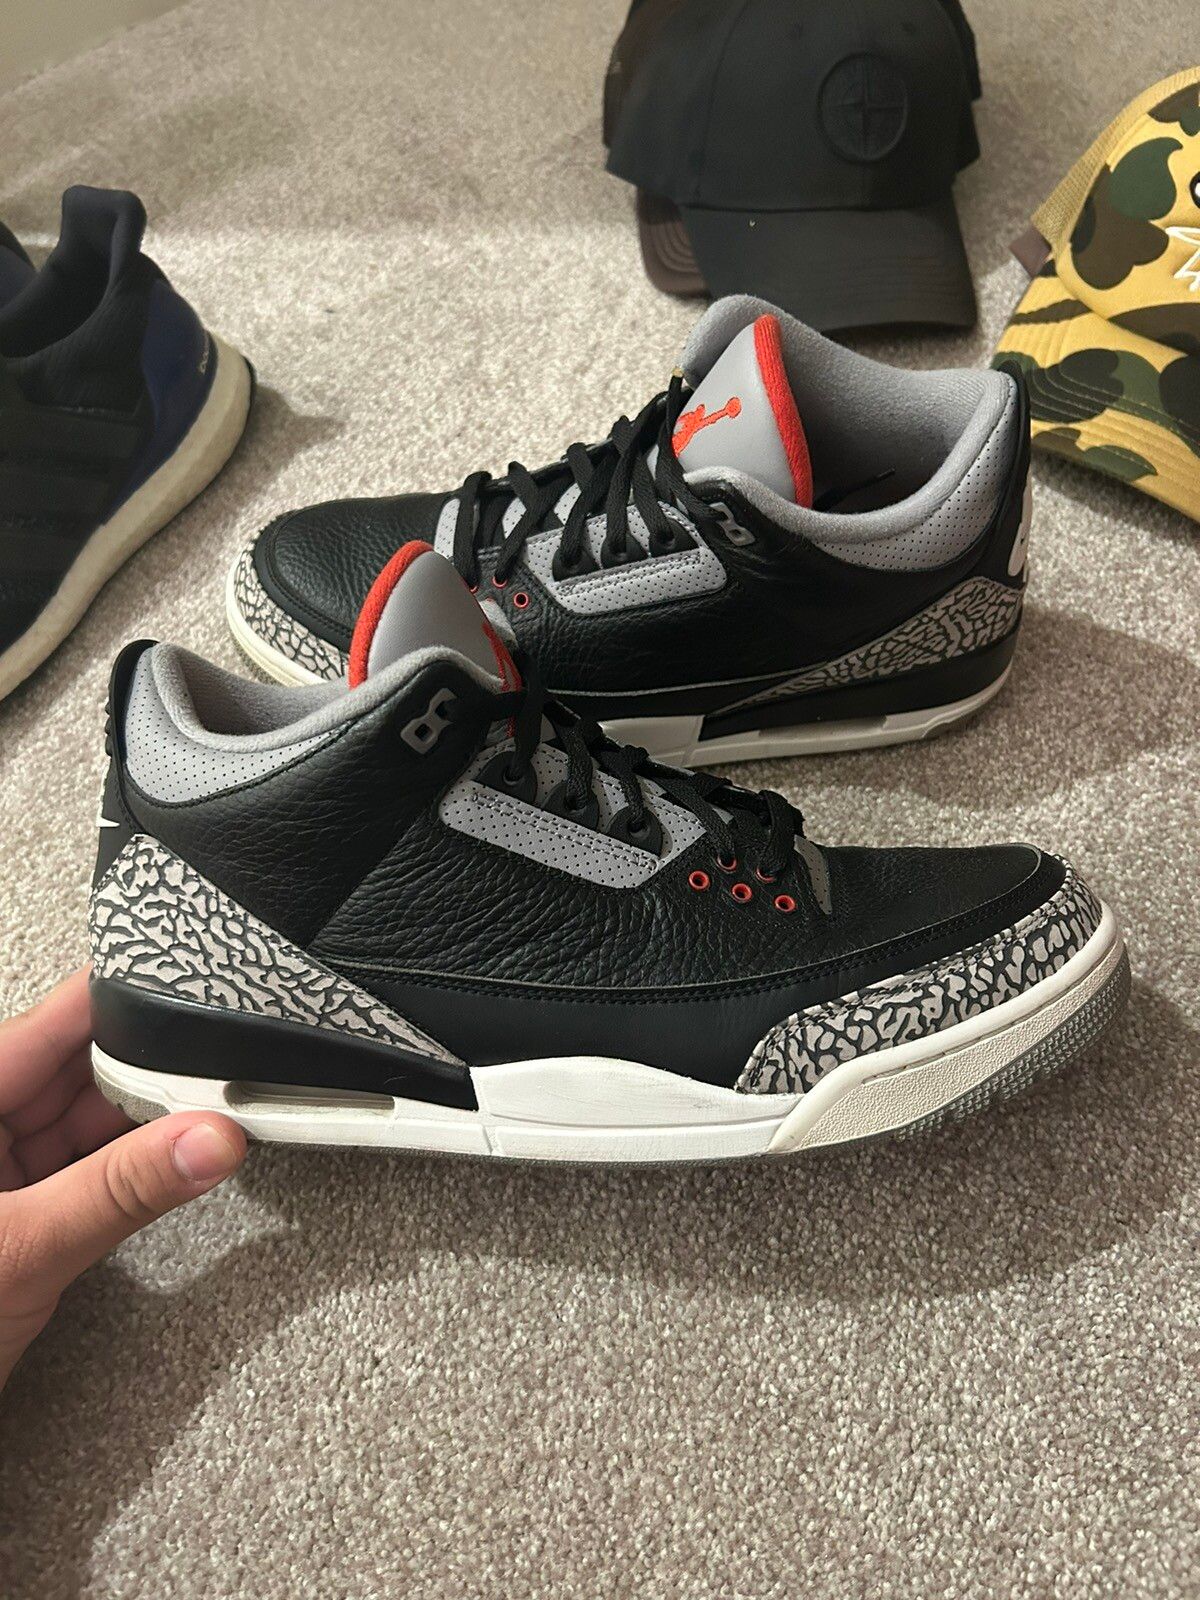 Pre-owned Jordan Brand Nike Air Jordan Black Cement 3s 2018 Shoes